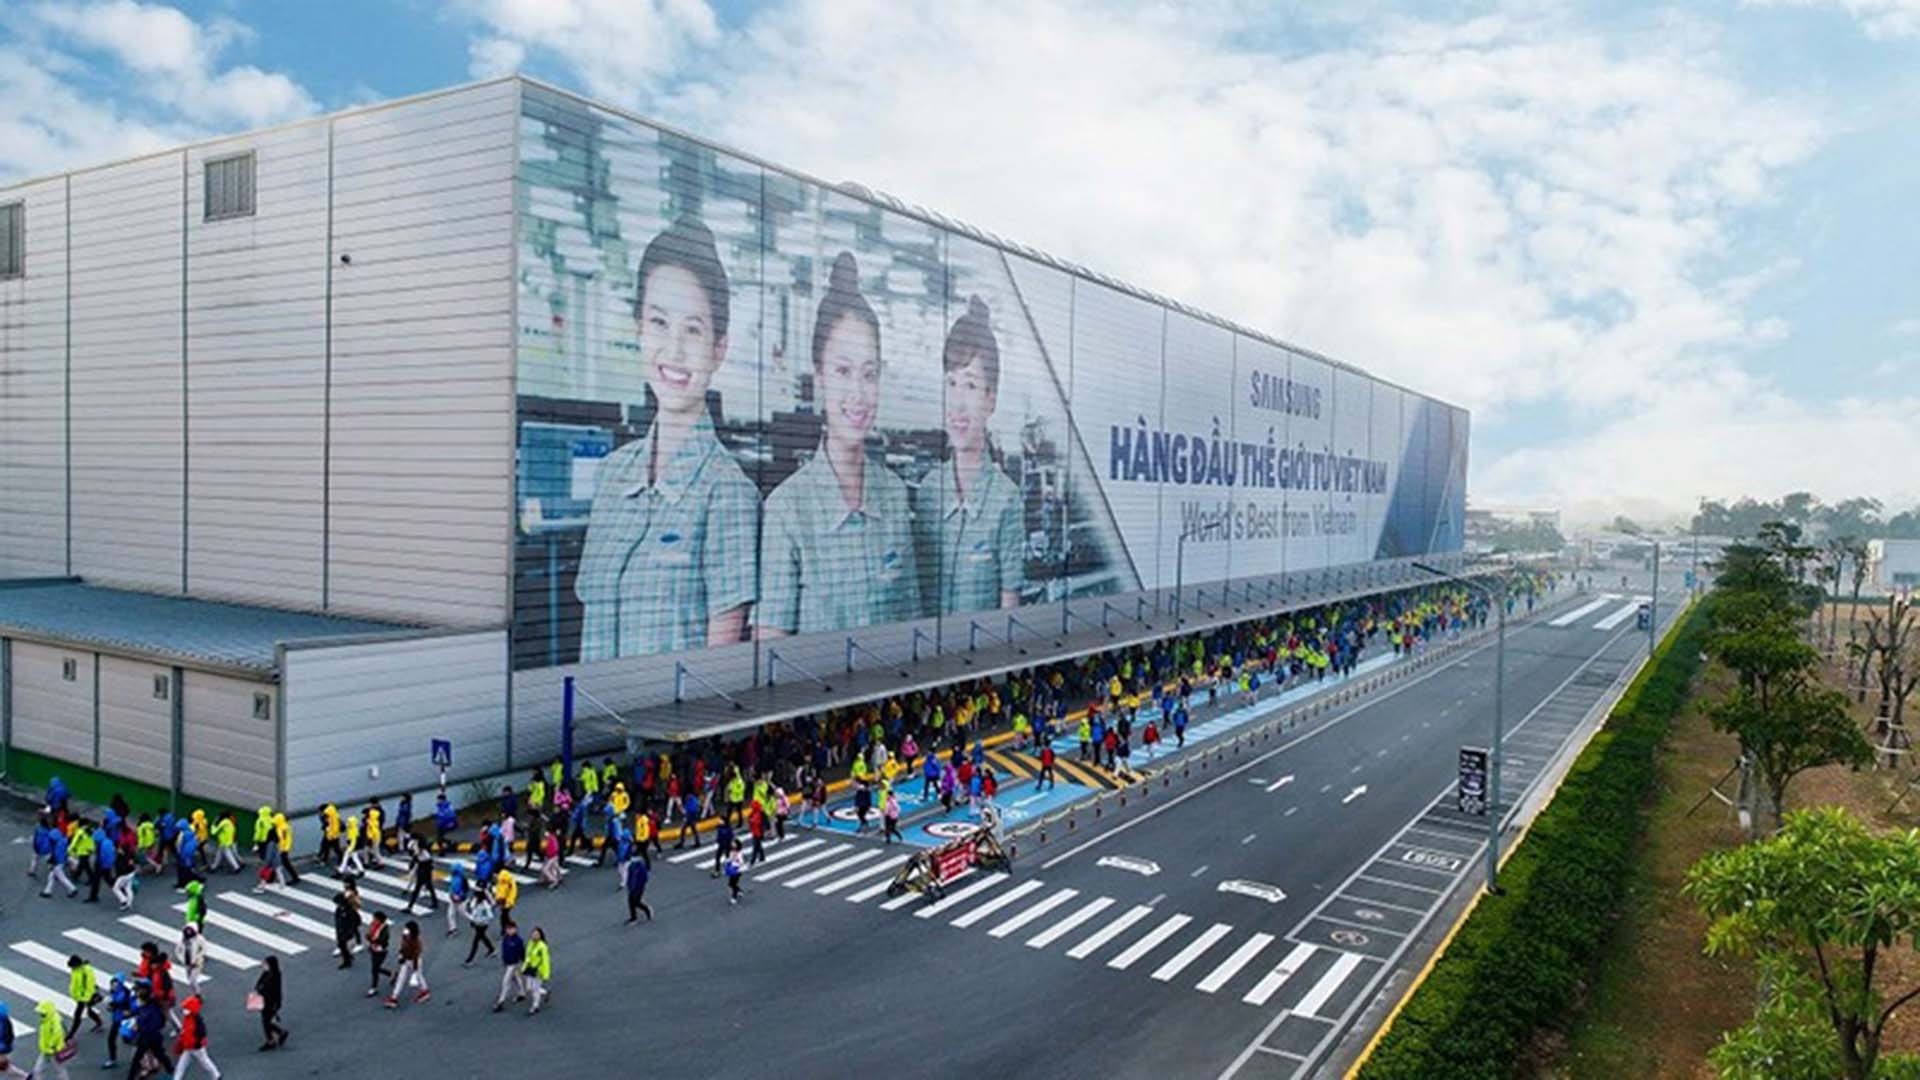 Samsung dự kiến đầu tư thêm 3,3 tỷ USD tại Việt Nam, đồng thời chuẩn bị điều kiện để sản xuất thử các sản phẩm lưới bóng chip bán dẫn tại Nhà máy Samsung Electro - Mechanics Thái Nguyên. (Nguồn: VGP)